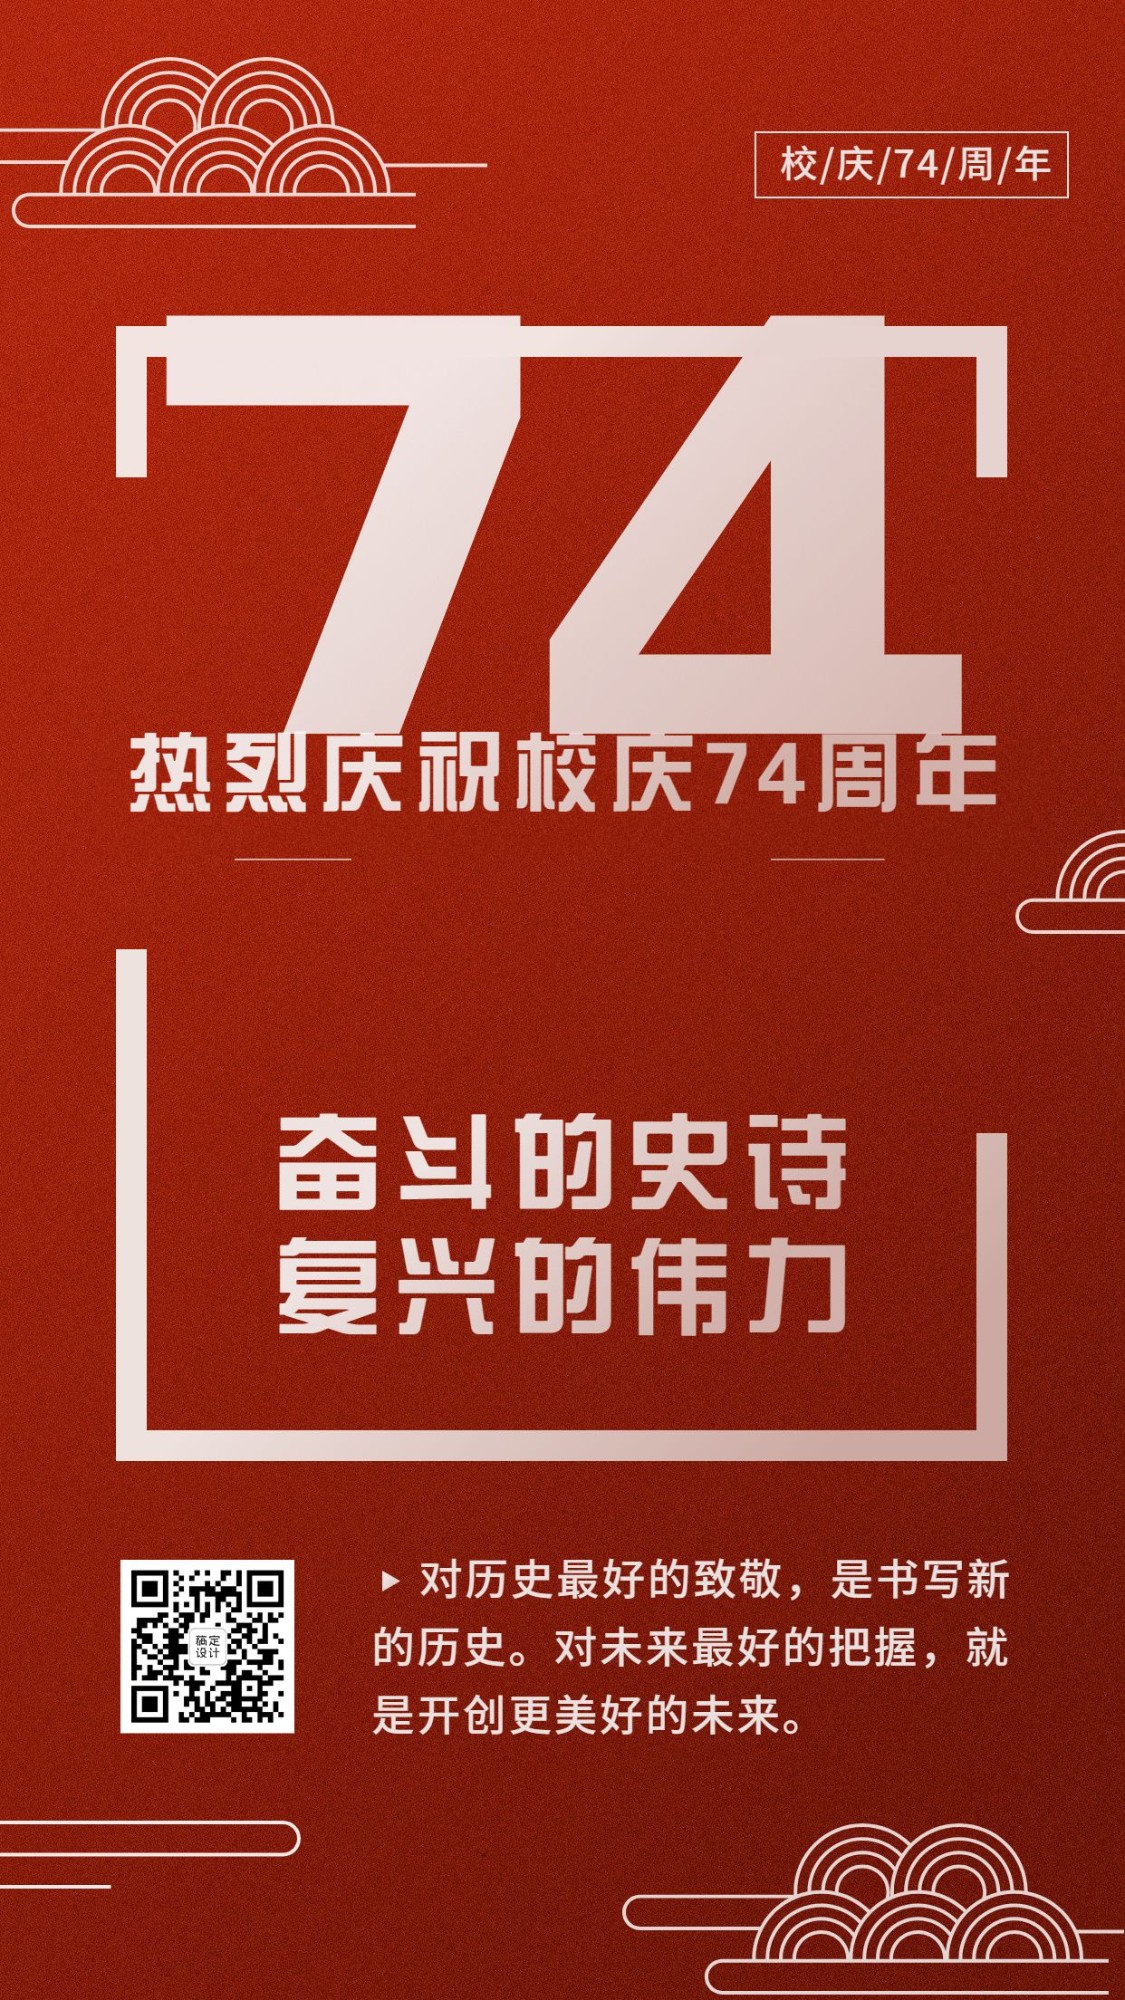 十一国庆节庆祝72周年手机海报预览效果